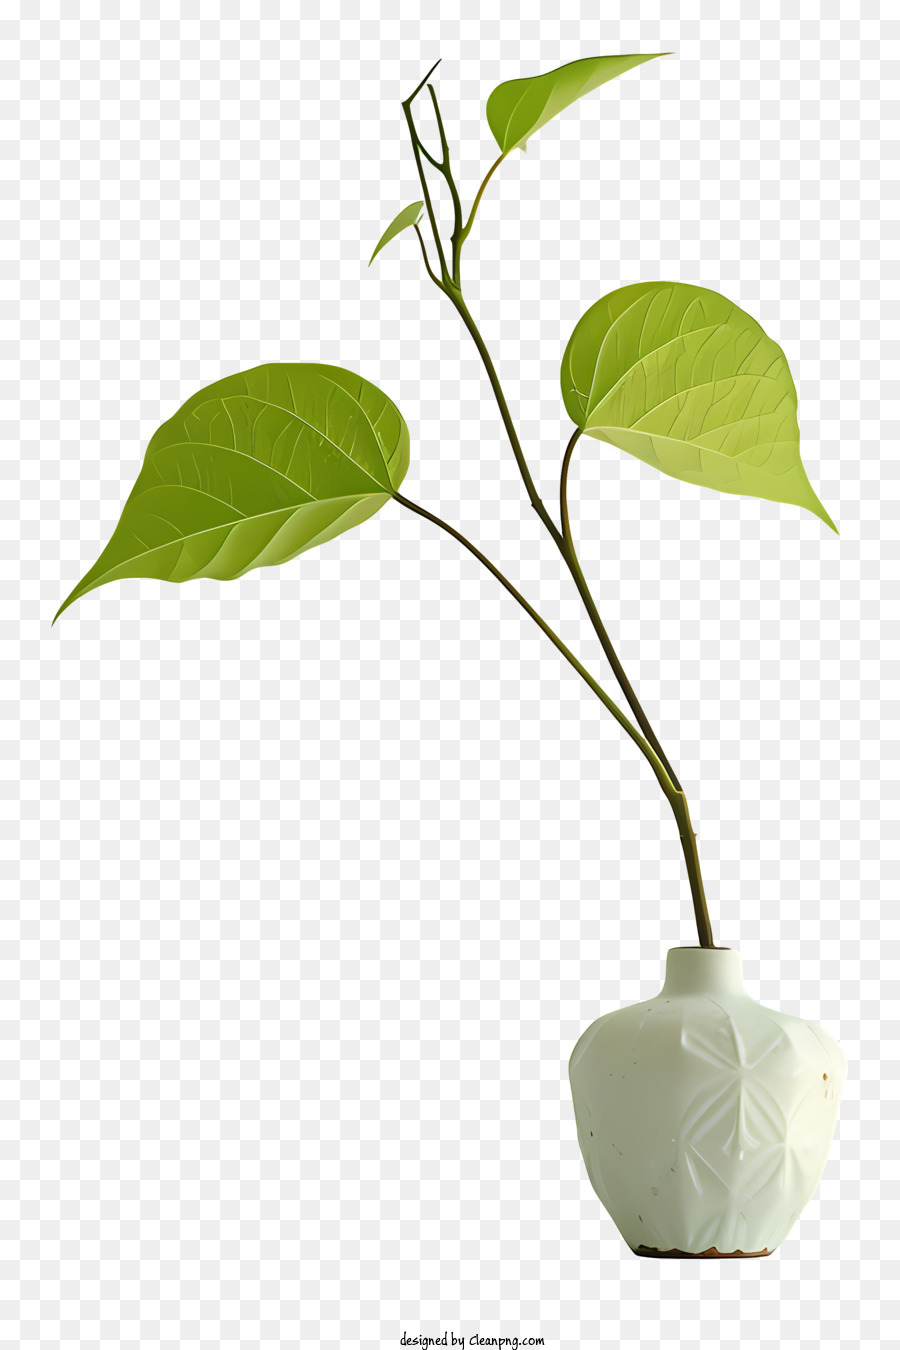 Vase Pflanze Vase Grüne Pflanze kleine Künstlerpflanze Repräsentation - Künstlerische Darstellung von kleiner Pflanzen, die aus der Vase wachsen